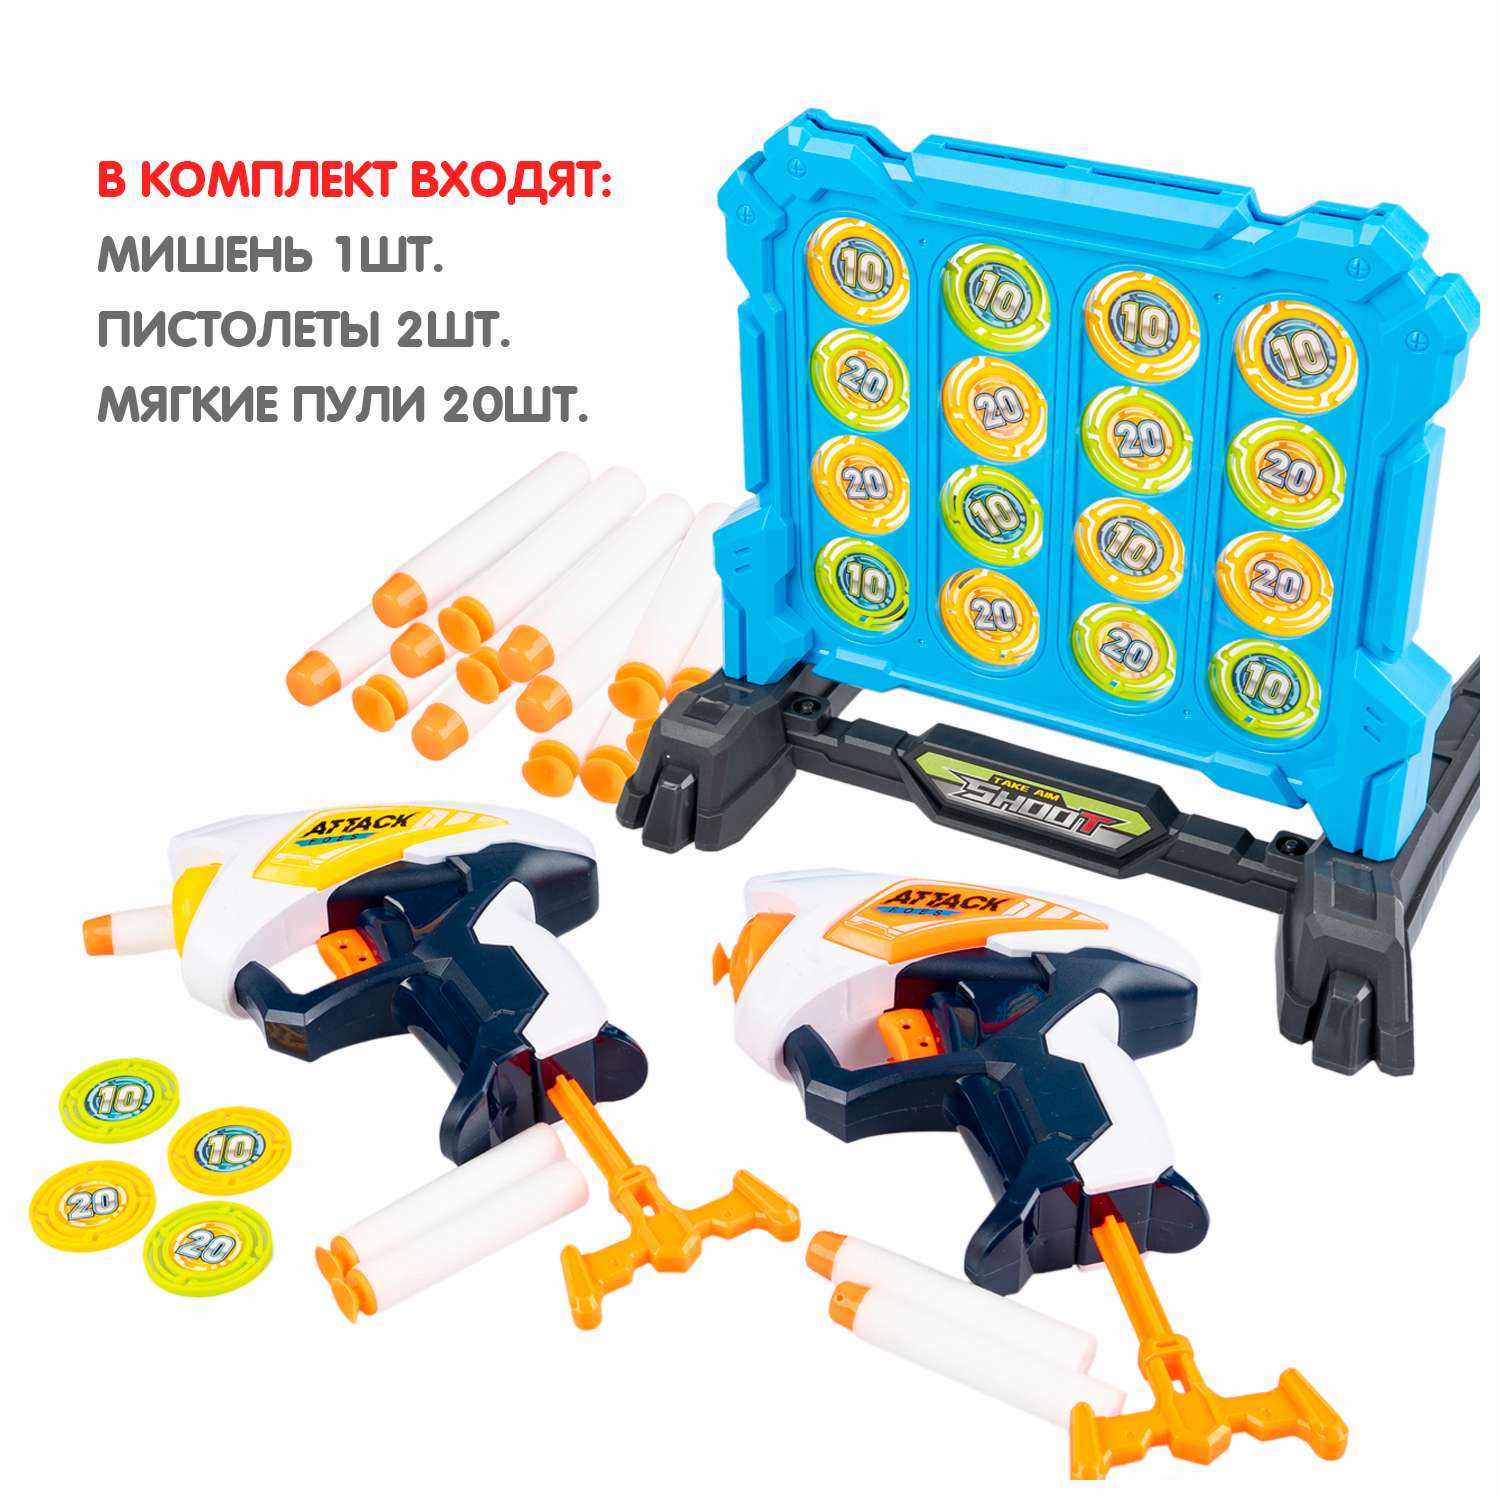 Игровой набор BONDIBON Cнайпер-Элита 2 бластера мишень и мягкие пули - фото 4